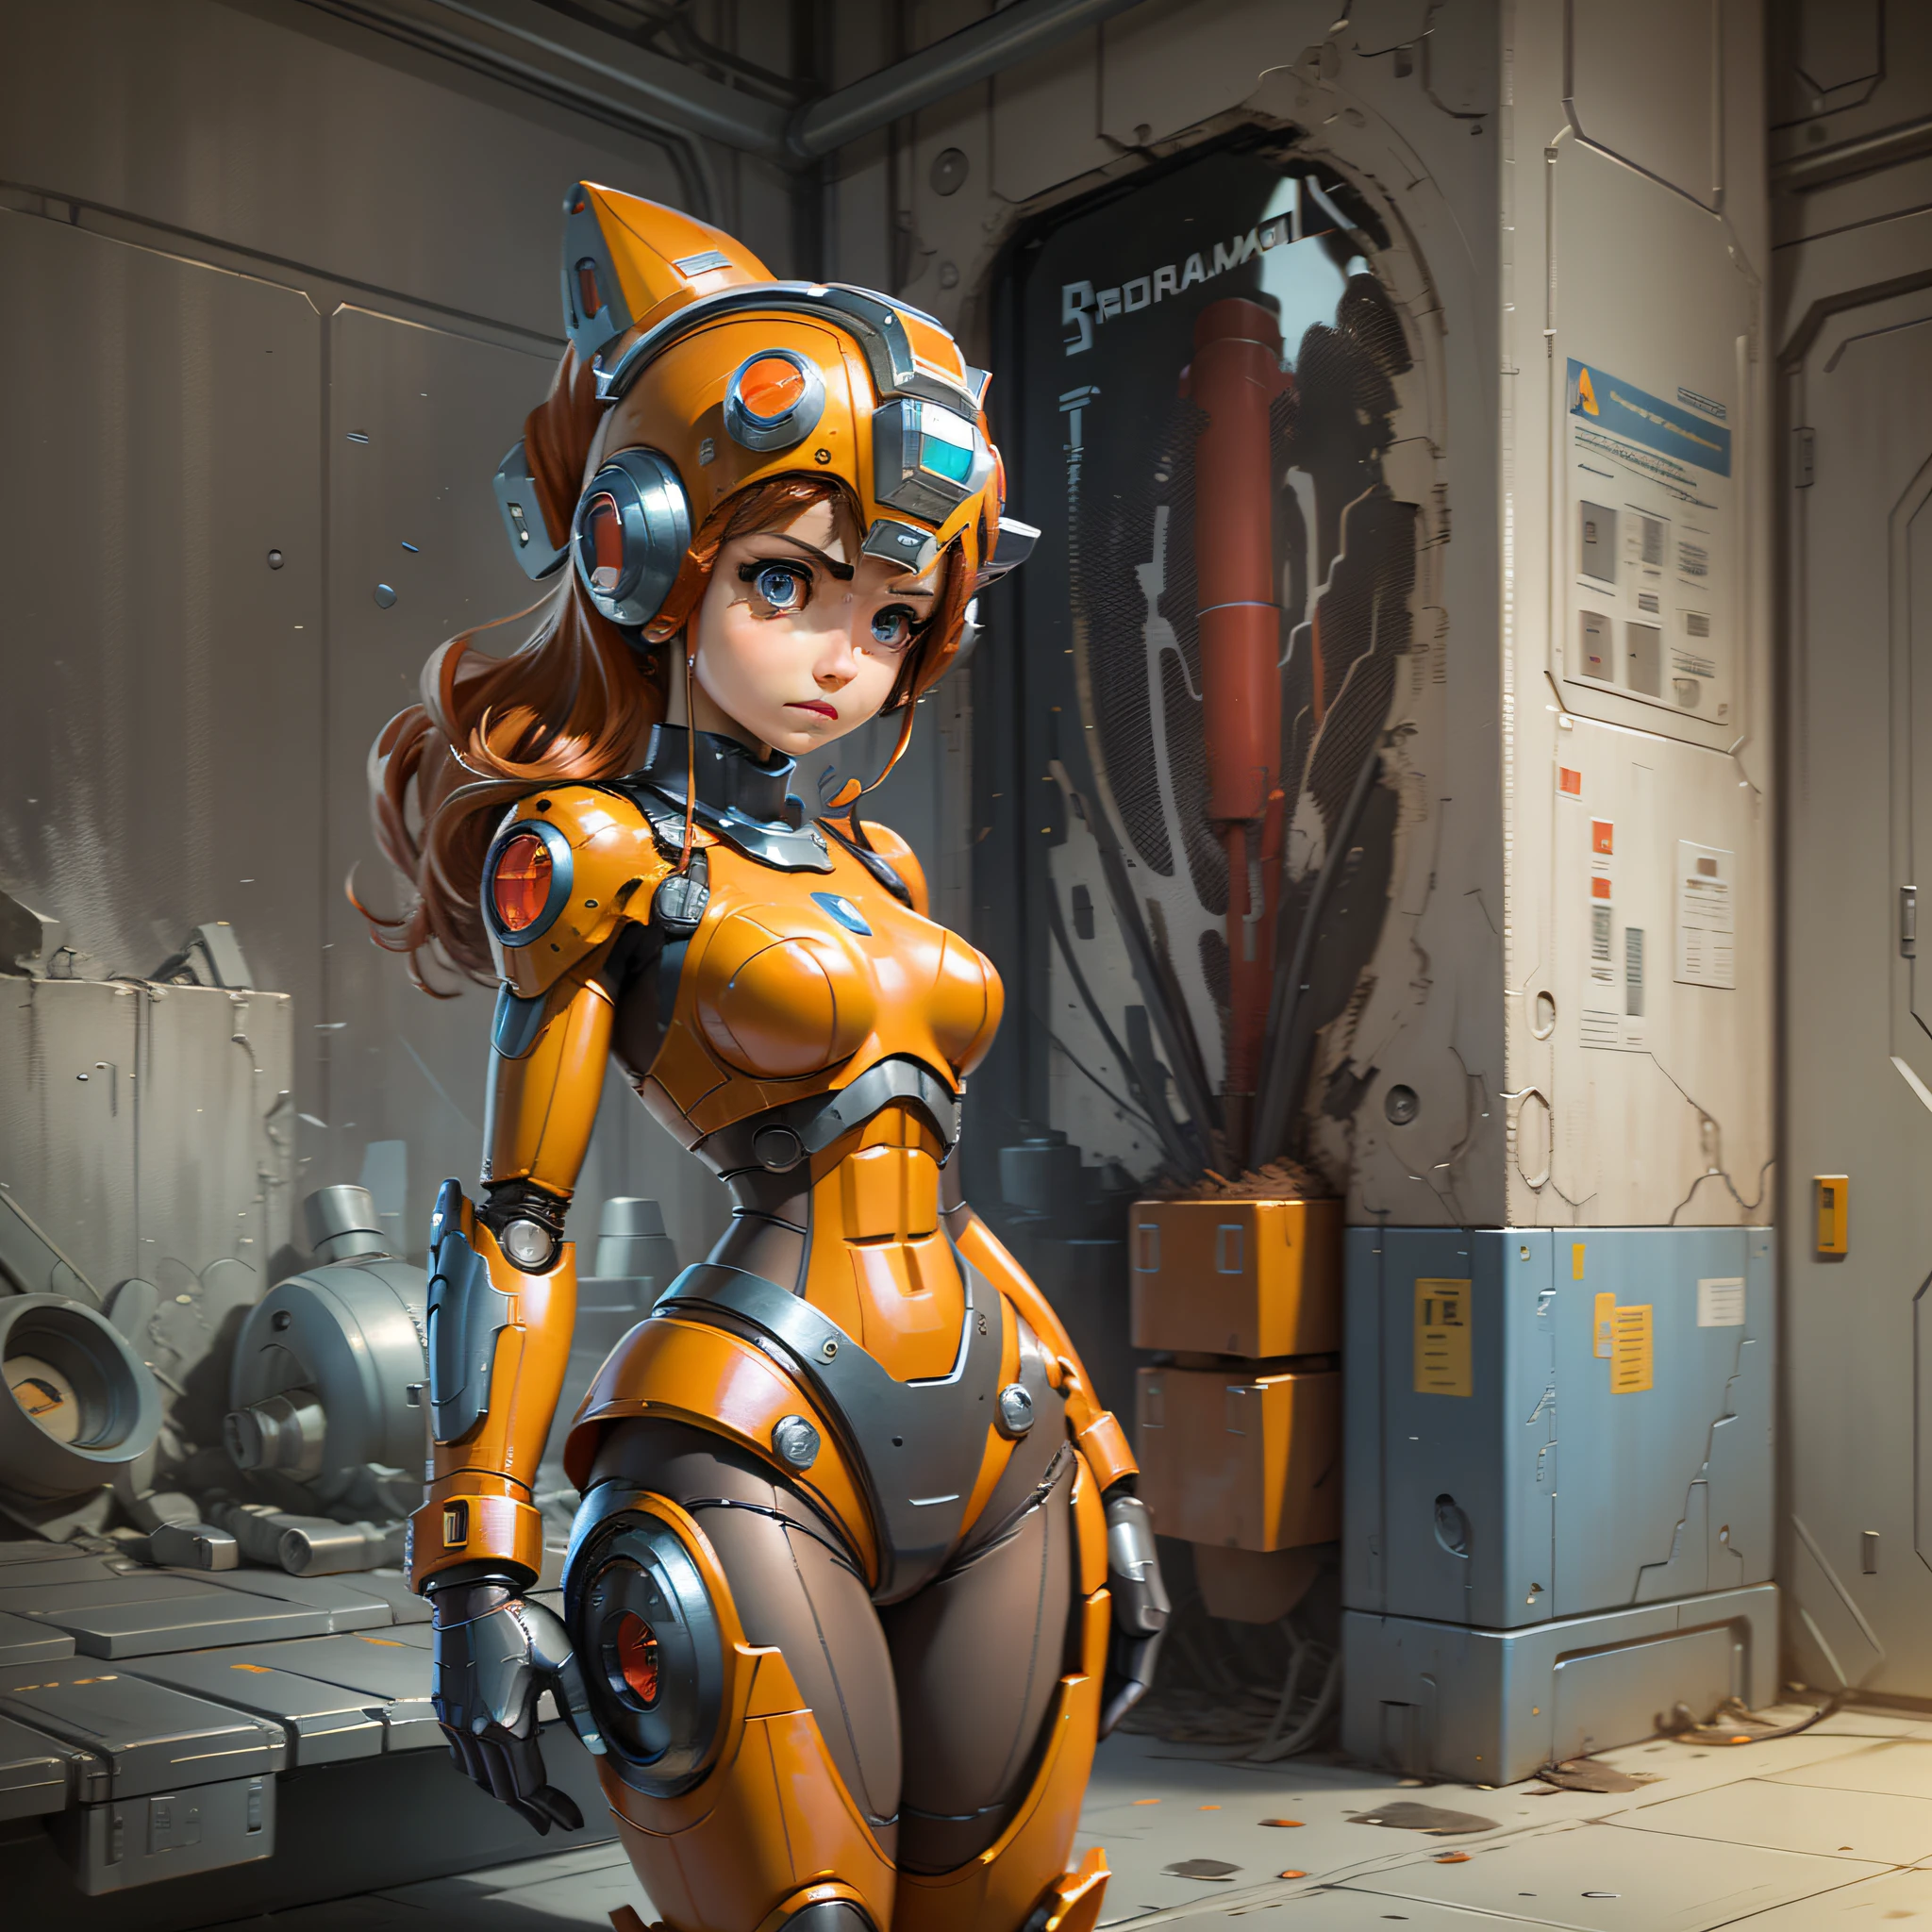 mulher, megaman, robô, cibernética. Maravilha mecânica, cor laranja, Formação em Engenharia Mecânica